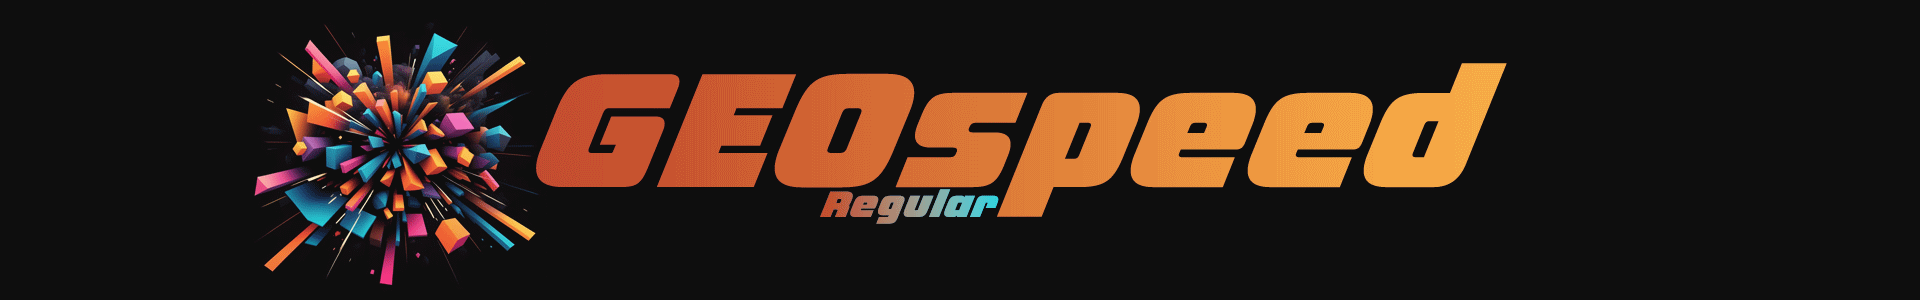 GEOspeed Oblique Fonts Regular & Small Caps